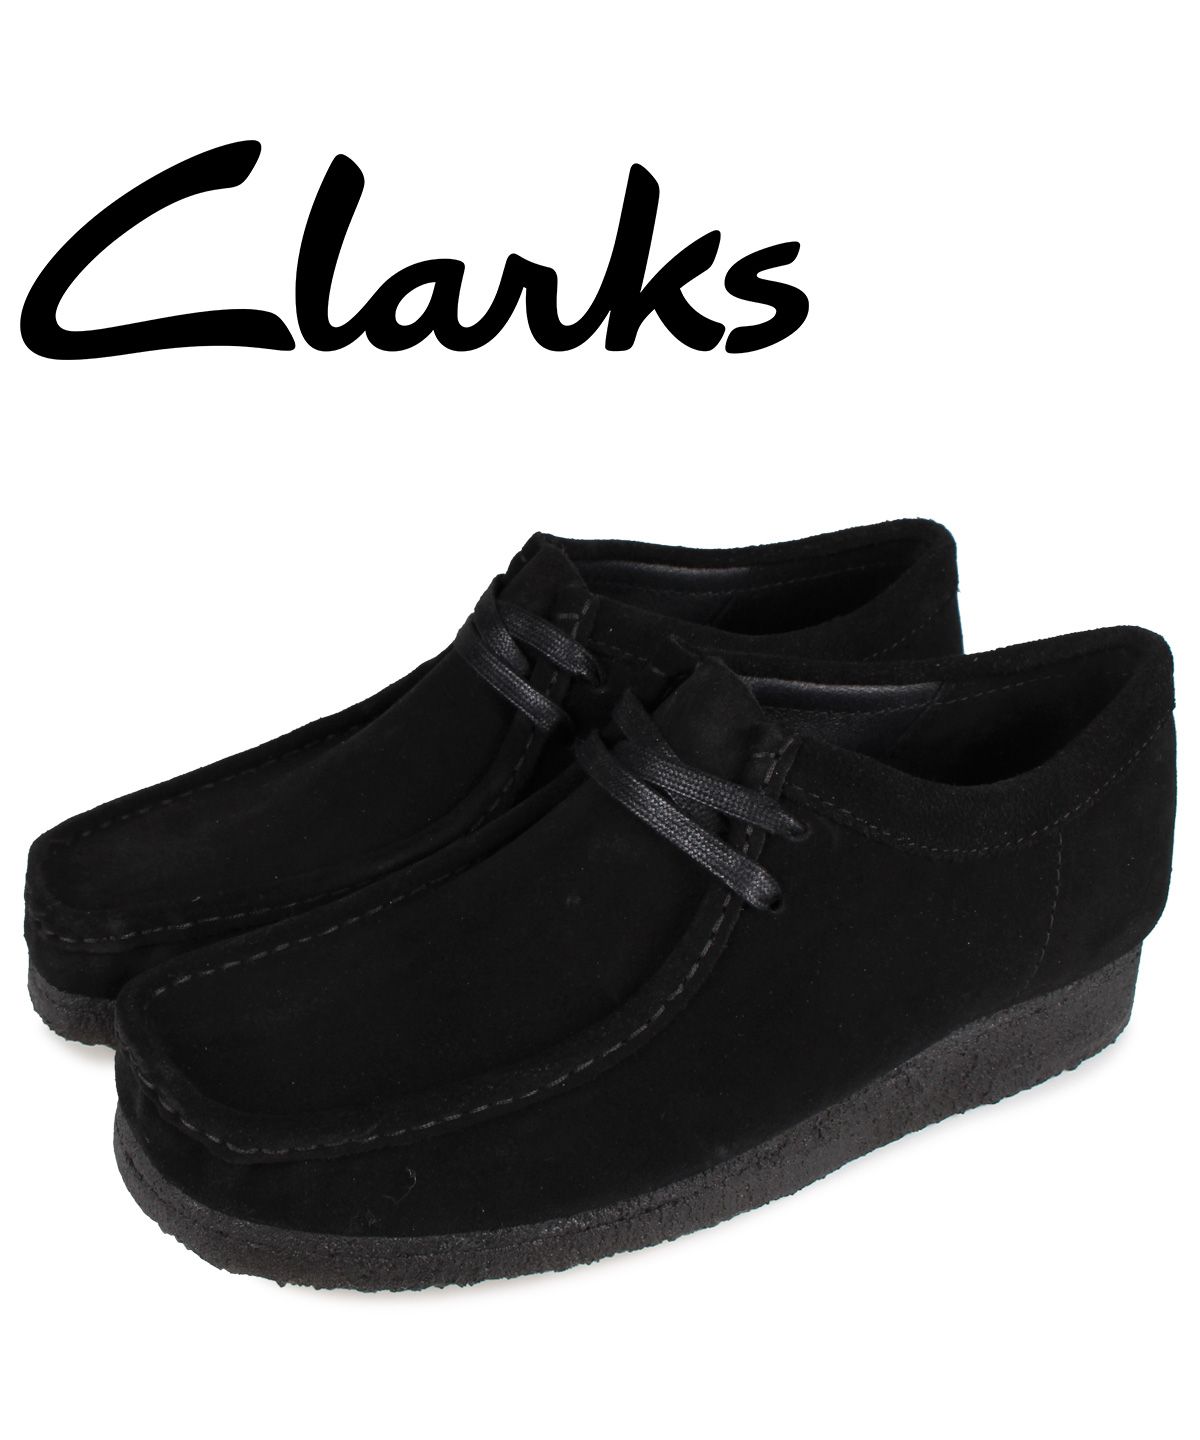 クラークス(Clarks) | クラークス clarks ワラビーブーツ メンズ